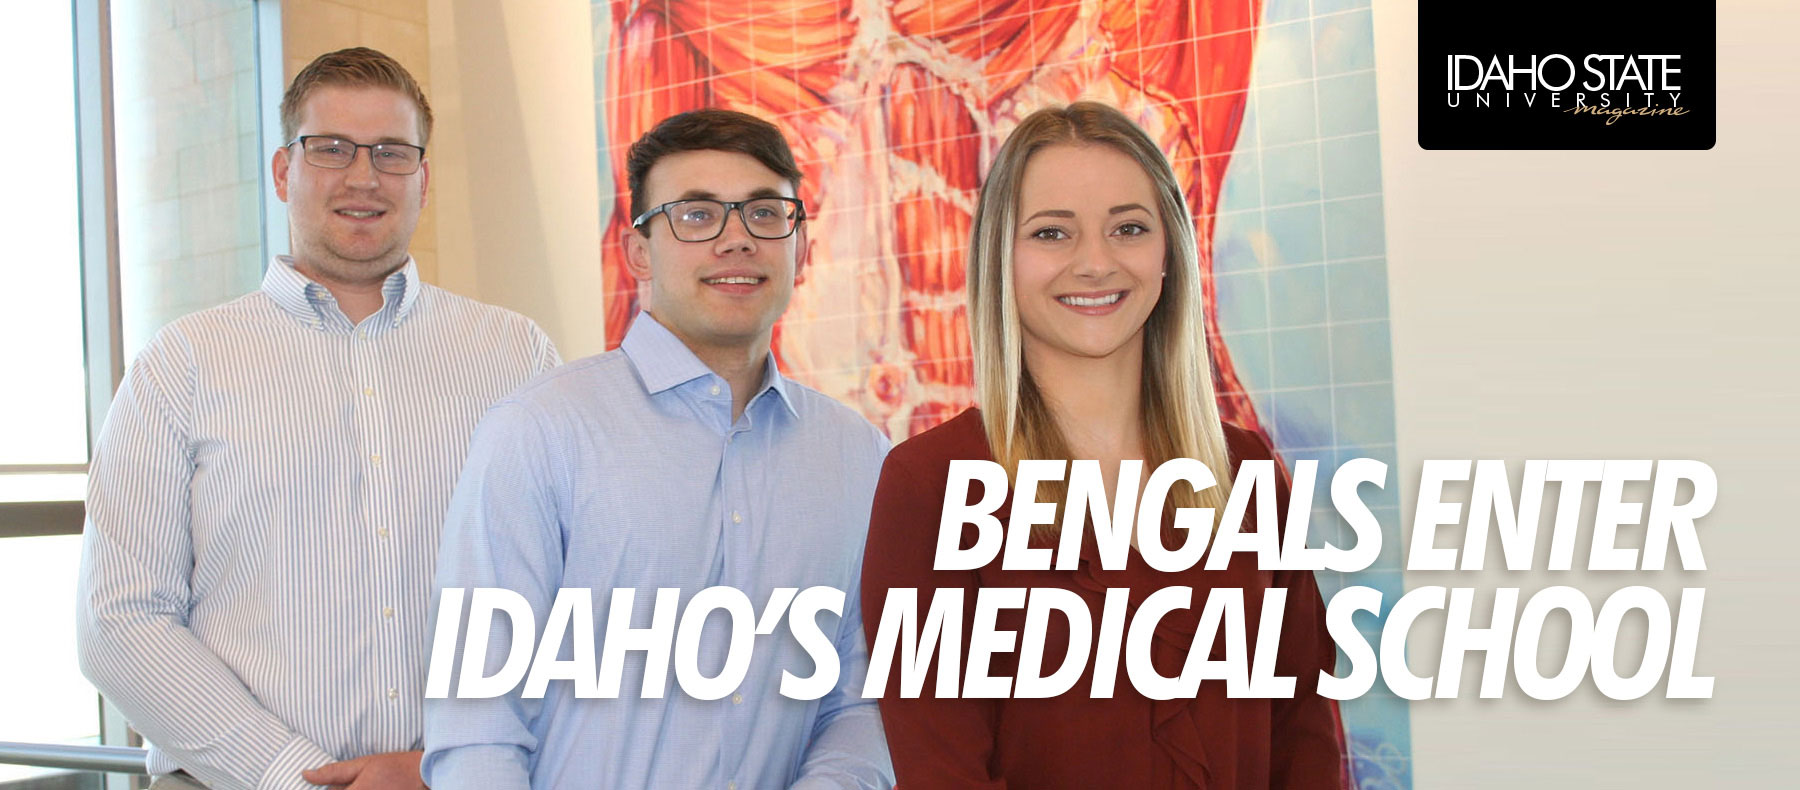 Bengals enter Idaho's medical school